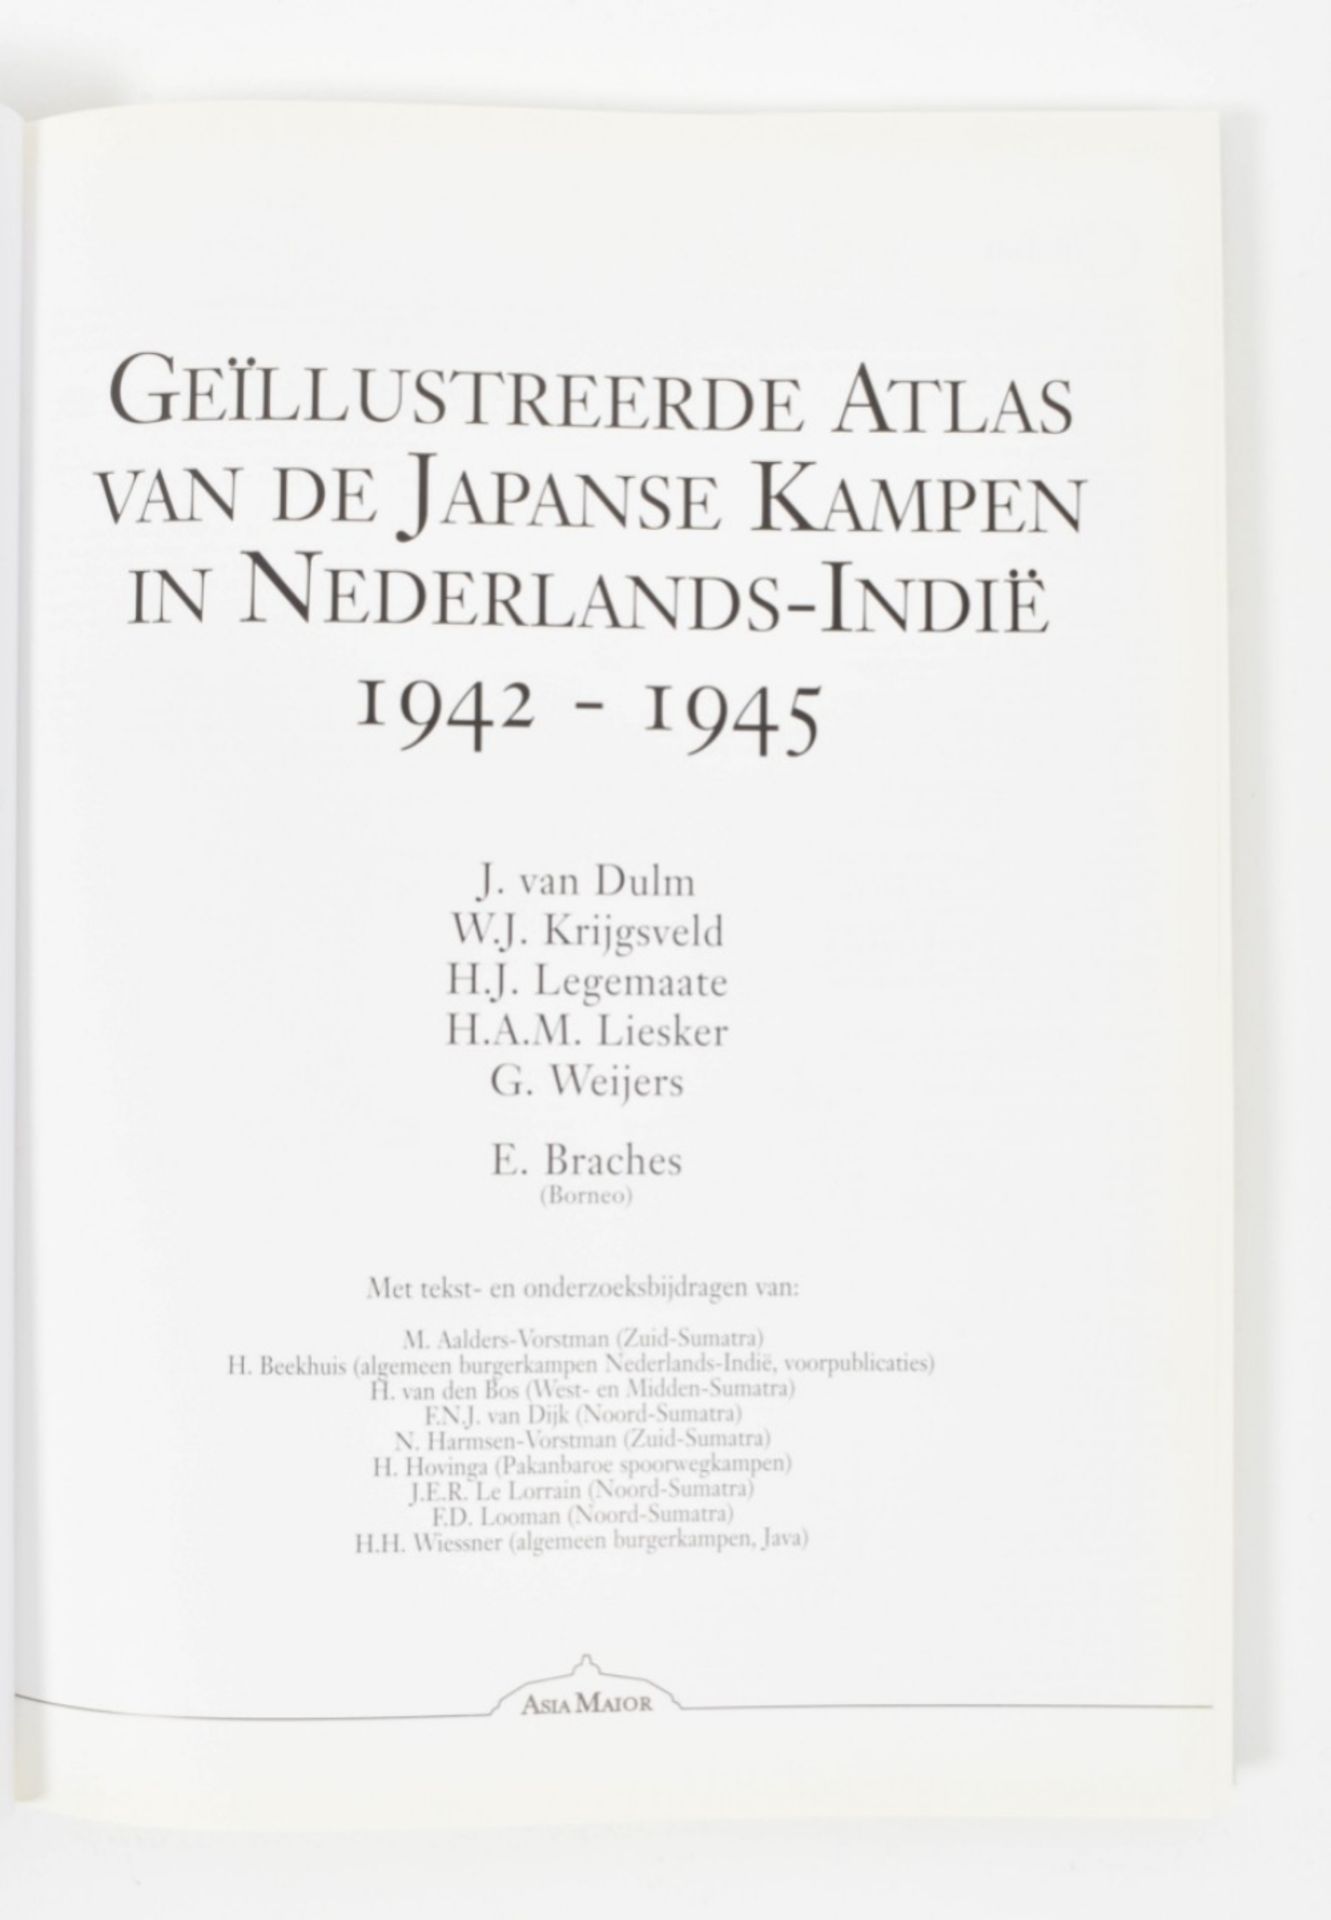 J. van Dulm a.o. Geïllustreerde atlas van de Japanse kampen in Nederlands-Indië - Image 3 of 9